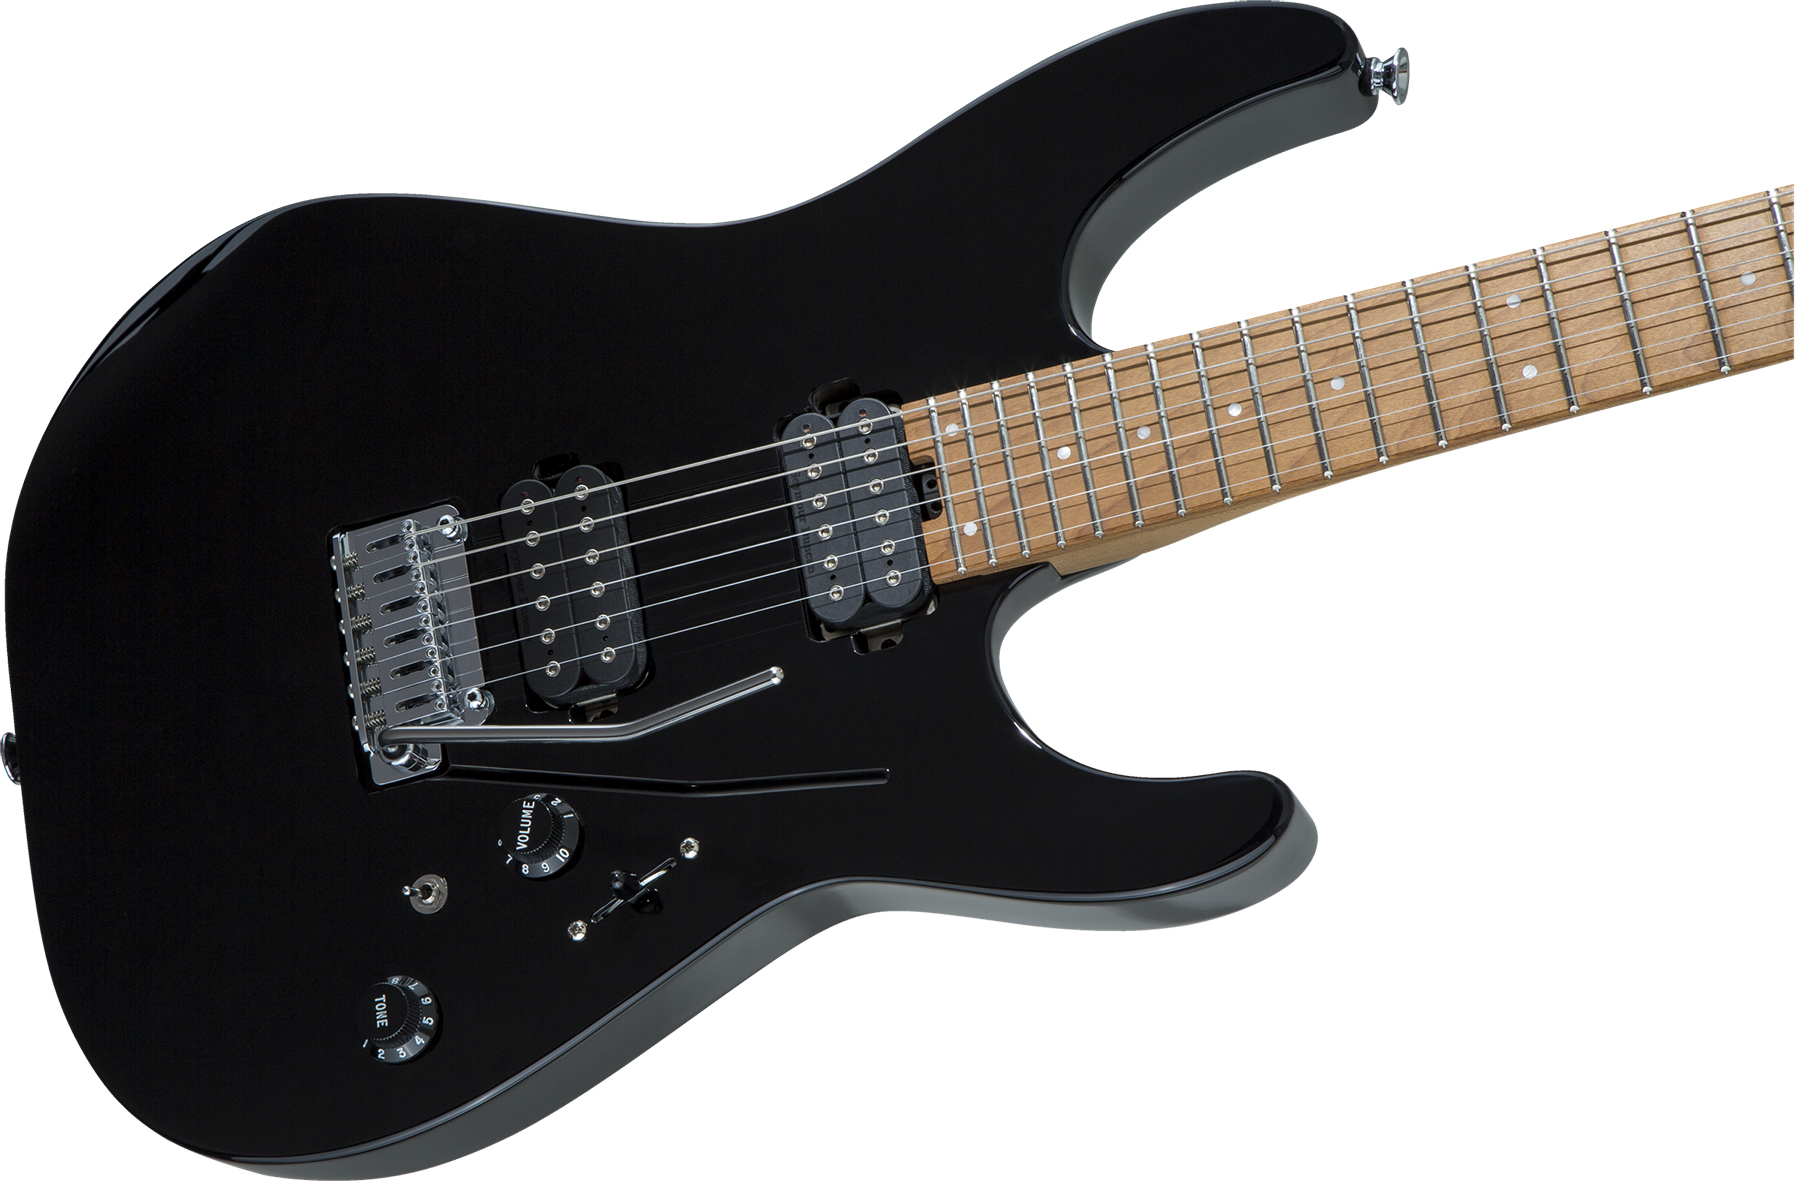 Charvel Pro-mod Dk24 Hh 2pt Cm Seymour Duncan Trem Mn - Black - Str shape electric guitar - Variation 2